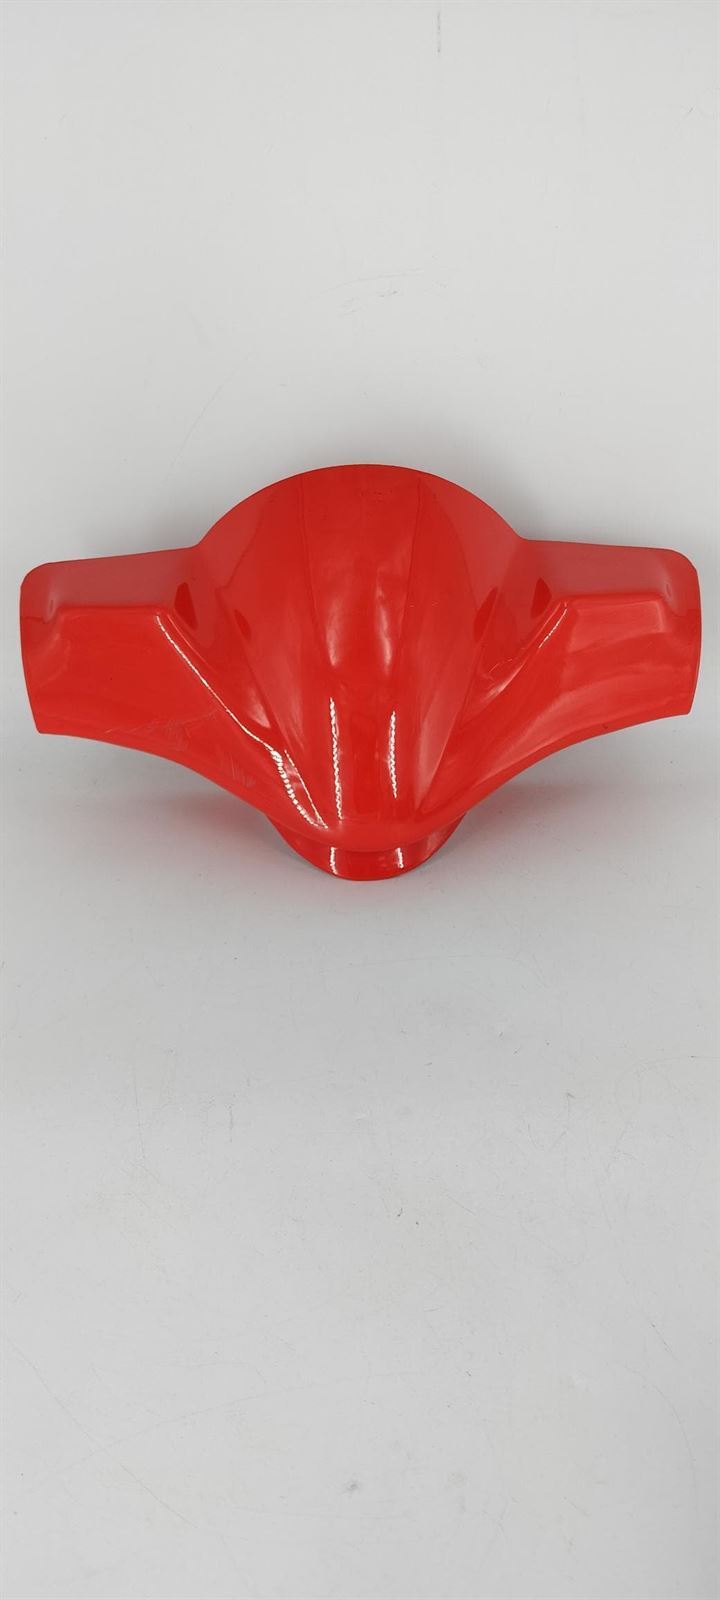 Tapa cubre manillar Beta ARK 50 rojo (Ocasion) - Imagen 1